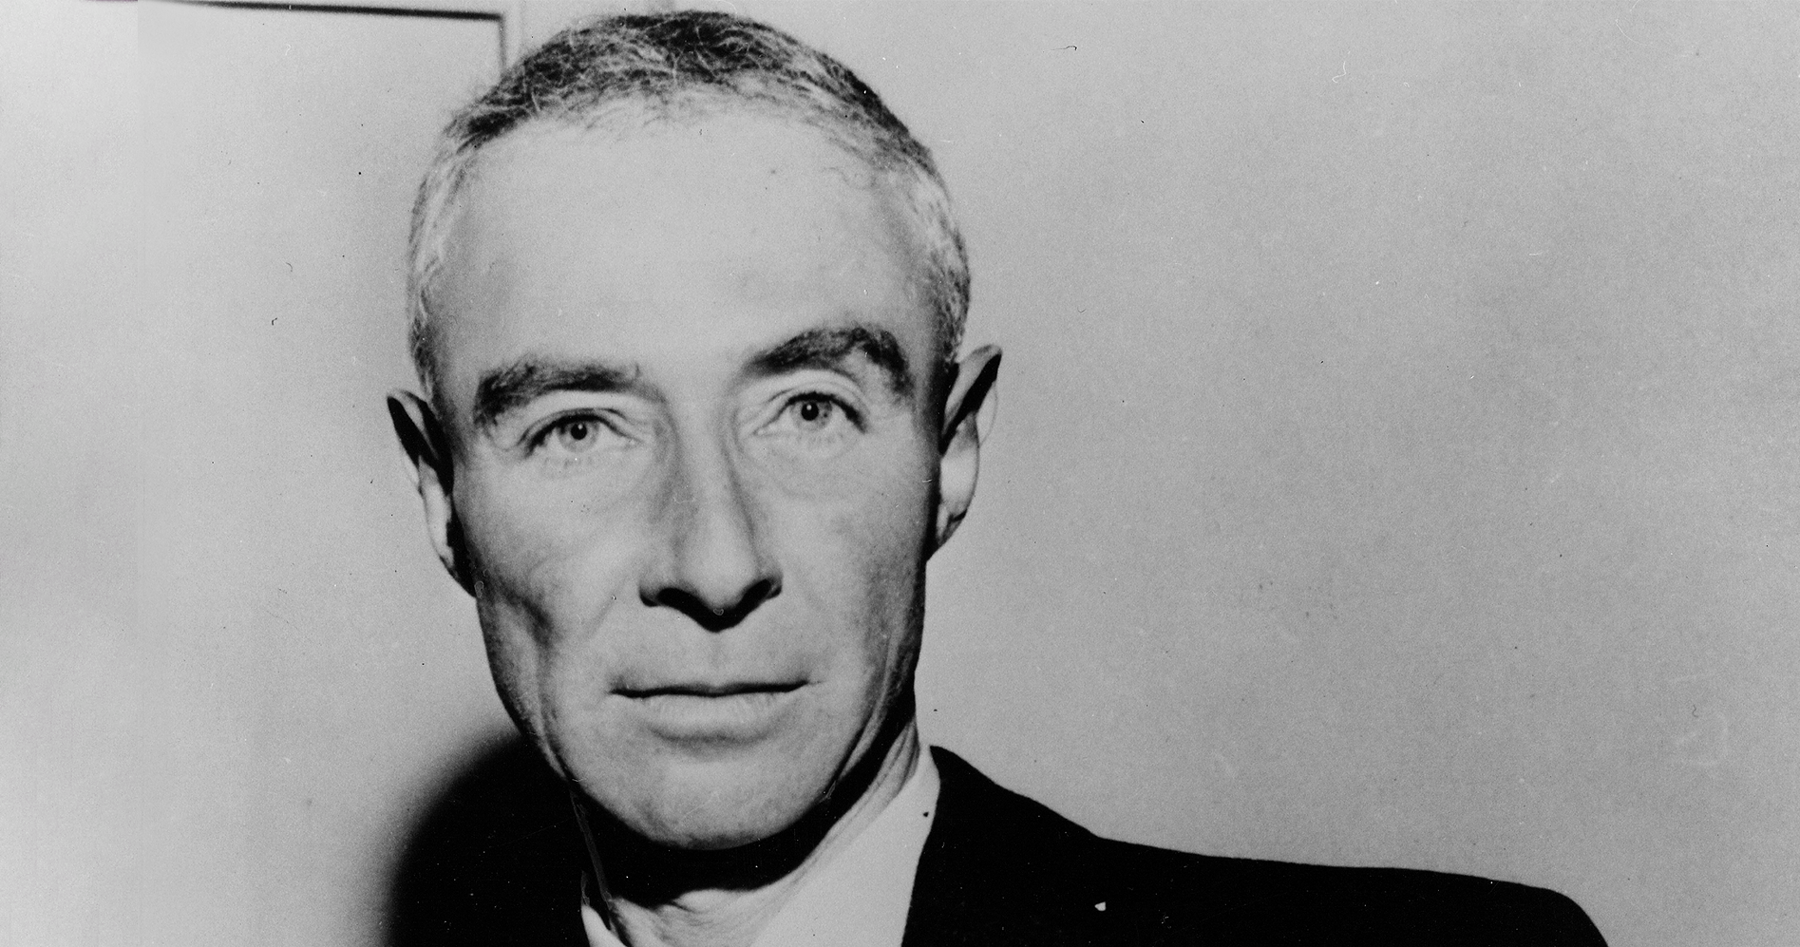 Ritratto di Robert Oppenheimer, immagine emilio segrè archives